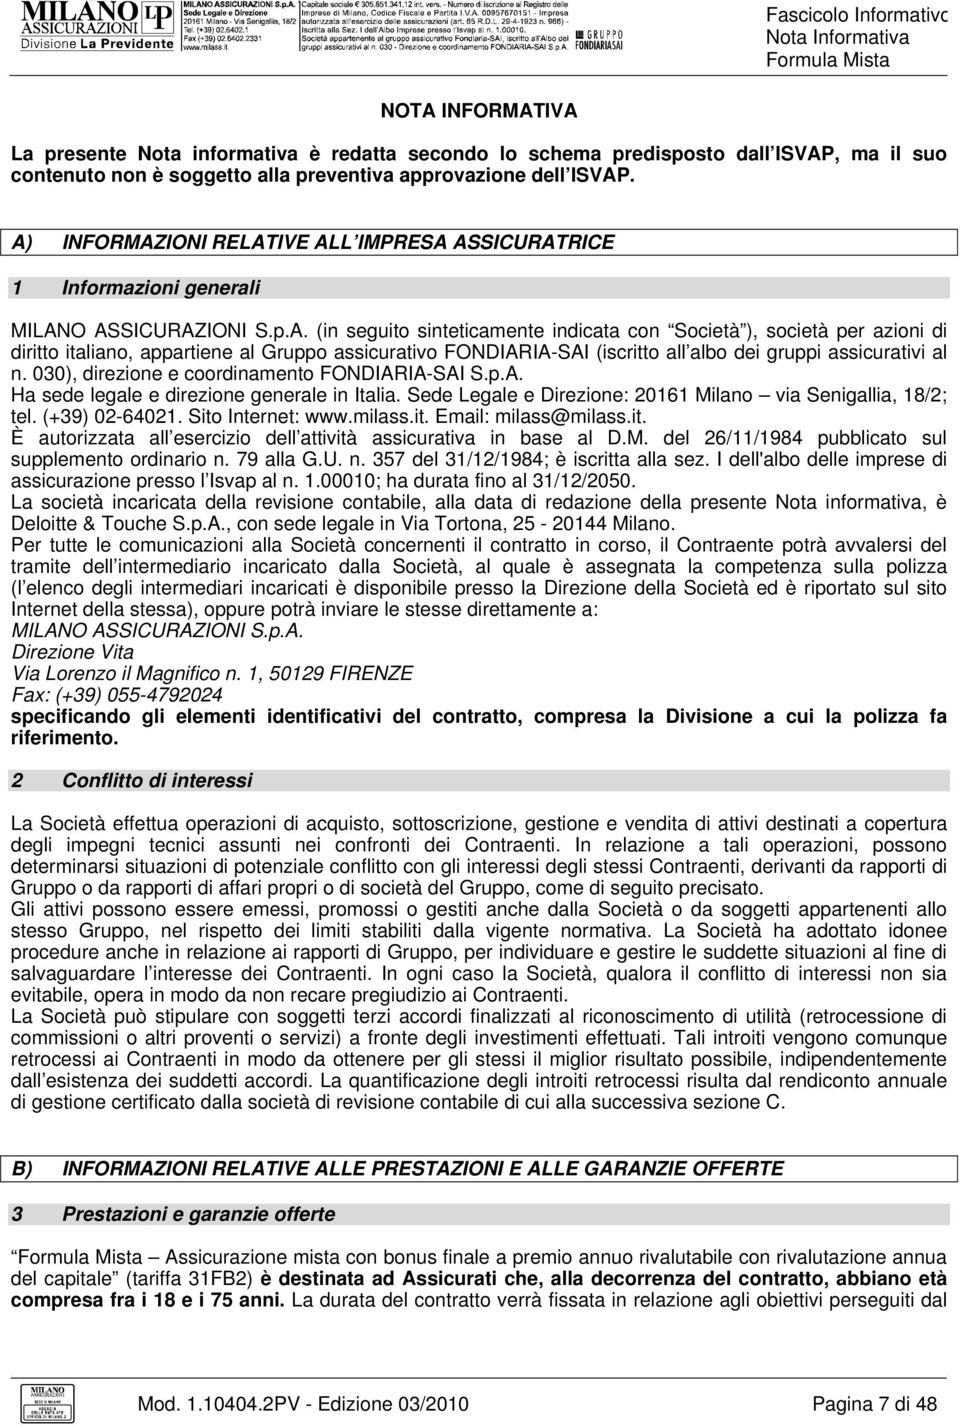 030), direzione e coordinamento FONDIARIA-SAI S.p.A. Ha sede legale e direzione generale in Italia. Sede Legale e Direzione: 20161 Milano via Senigallia, 18/2; tel. (+39) 02-64021. Sito Internet: www.